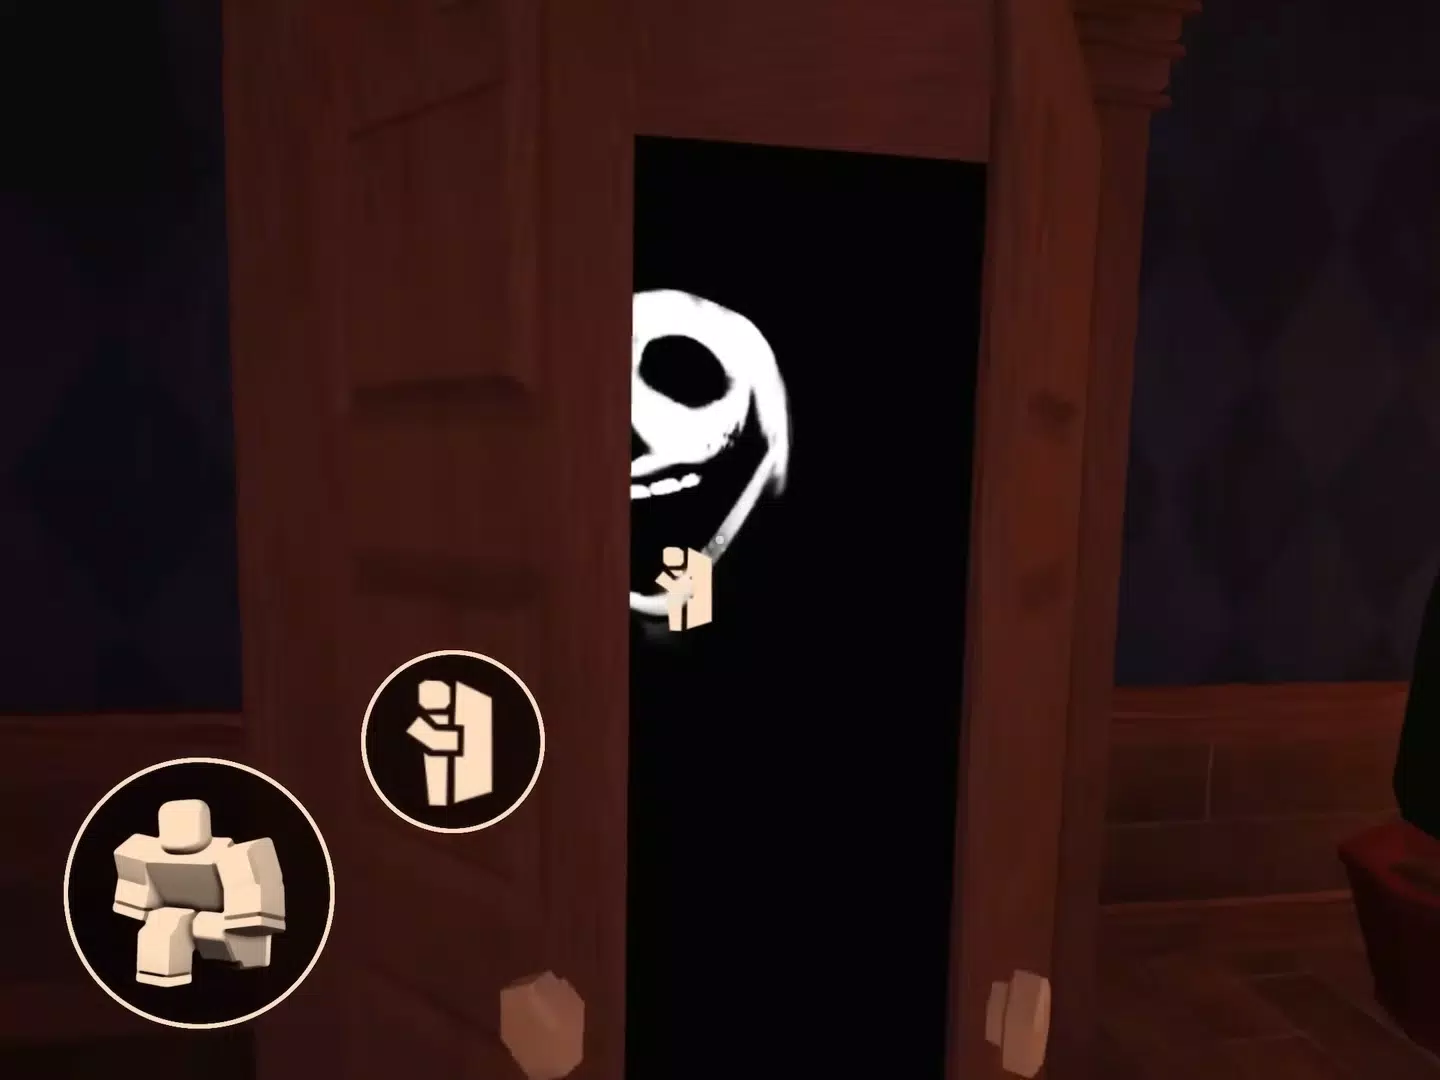 Doors roblox horror game